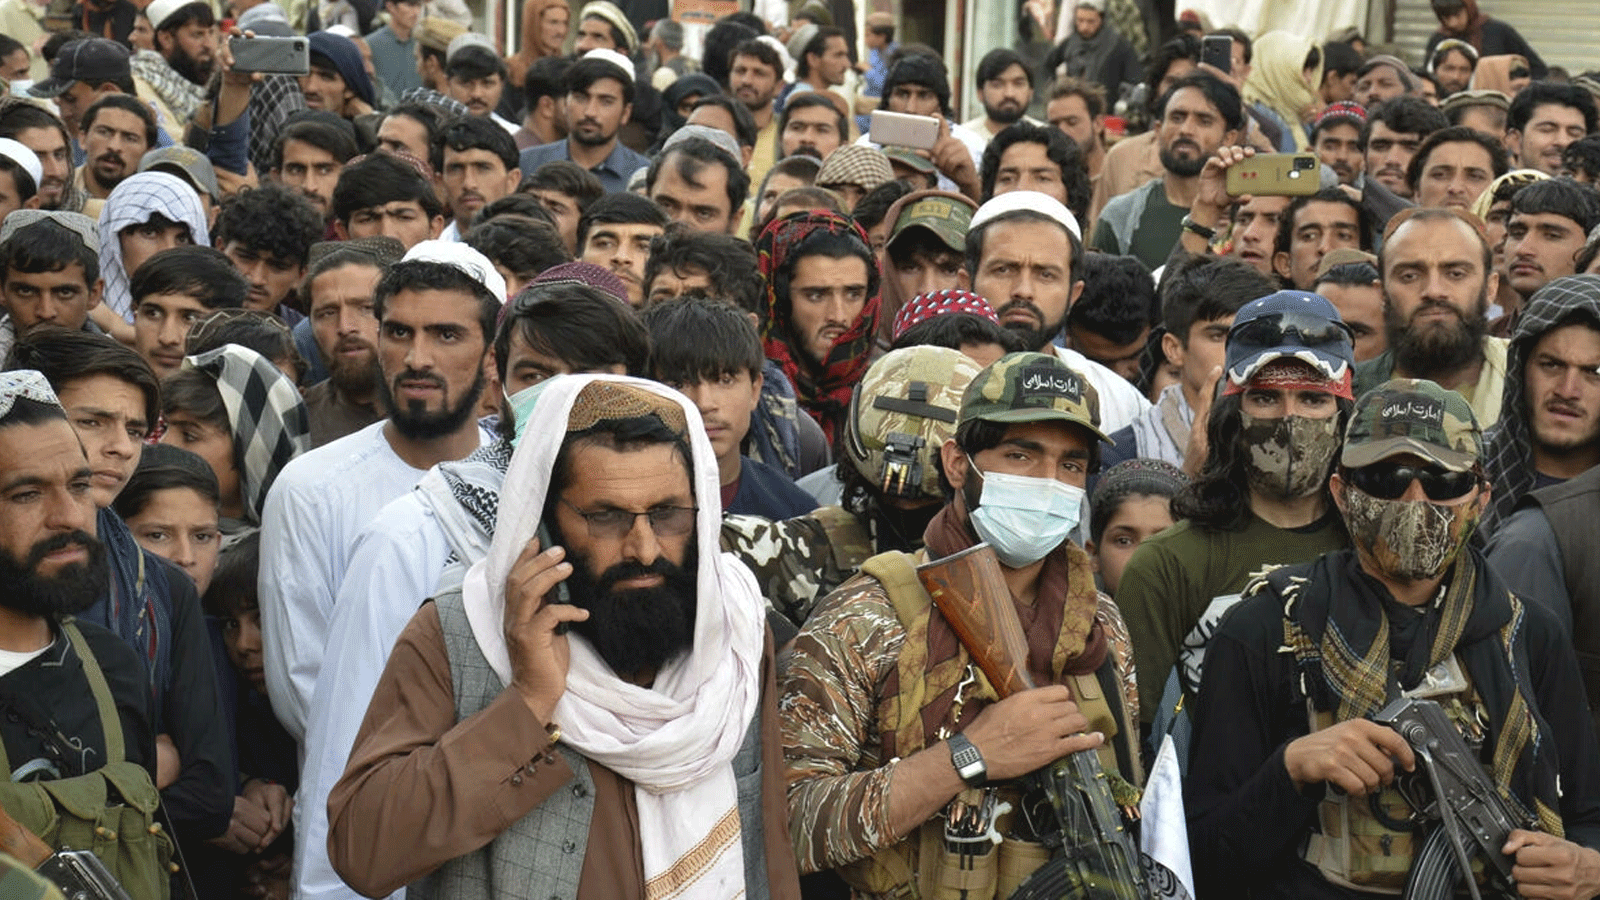 متظاهرون في خوست احتجاجا على ضربات شنّتها باكستان على الأراضي الأفغانية في 16 نيسان/أبريل 2022